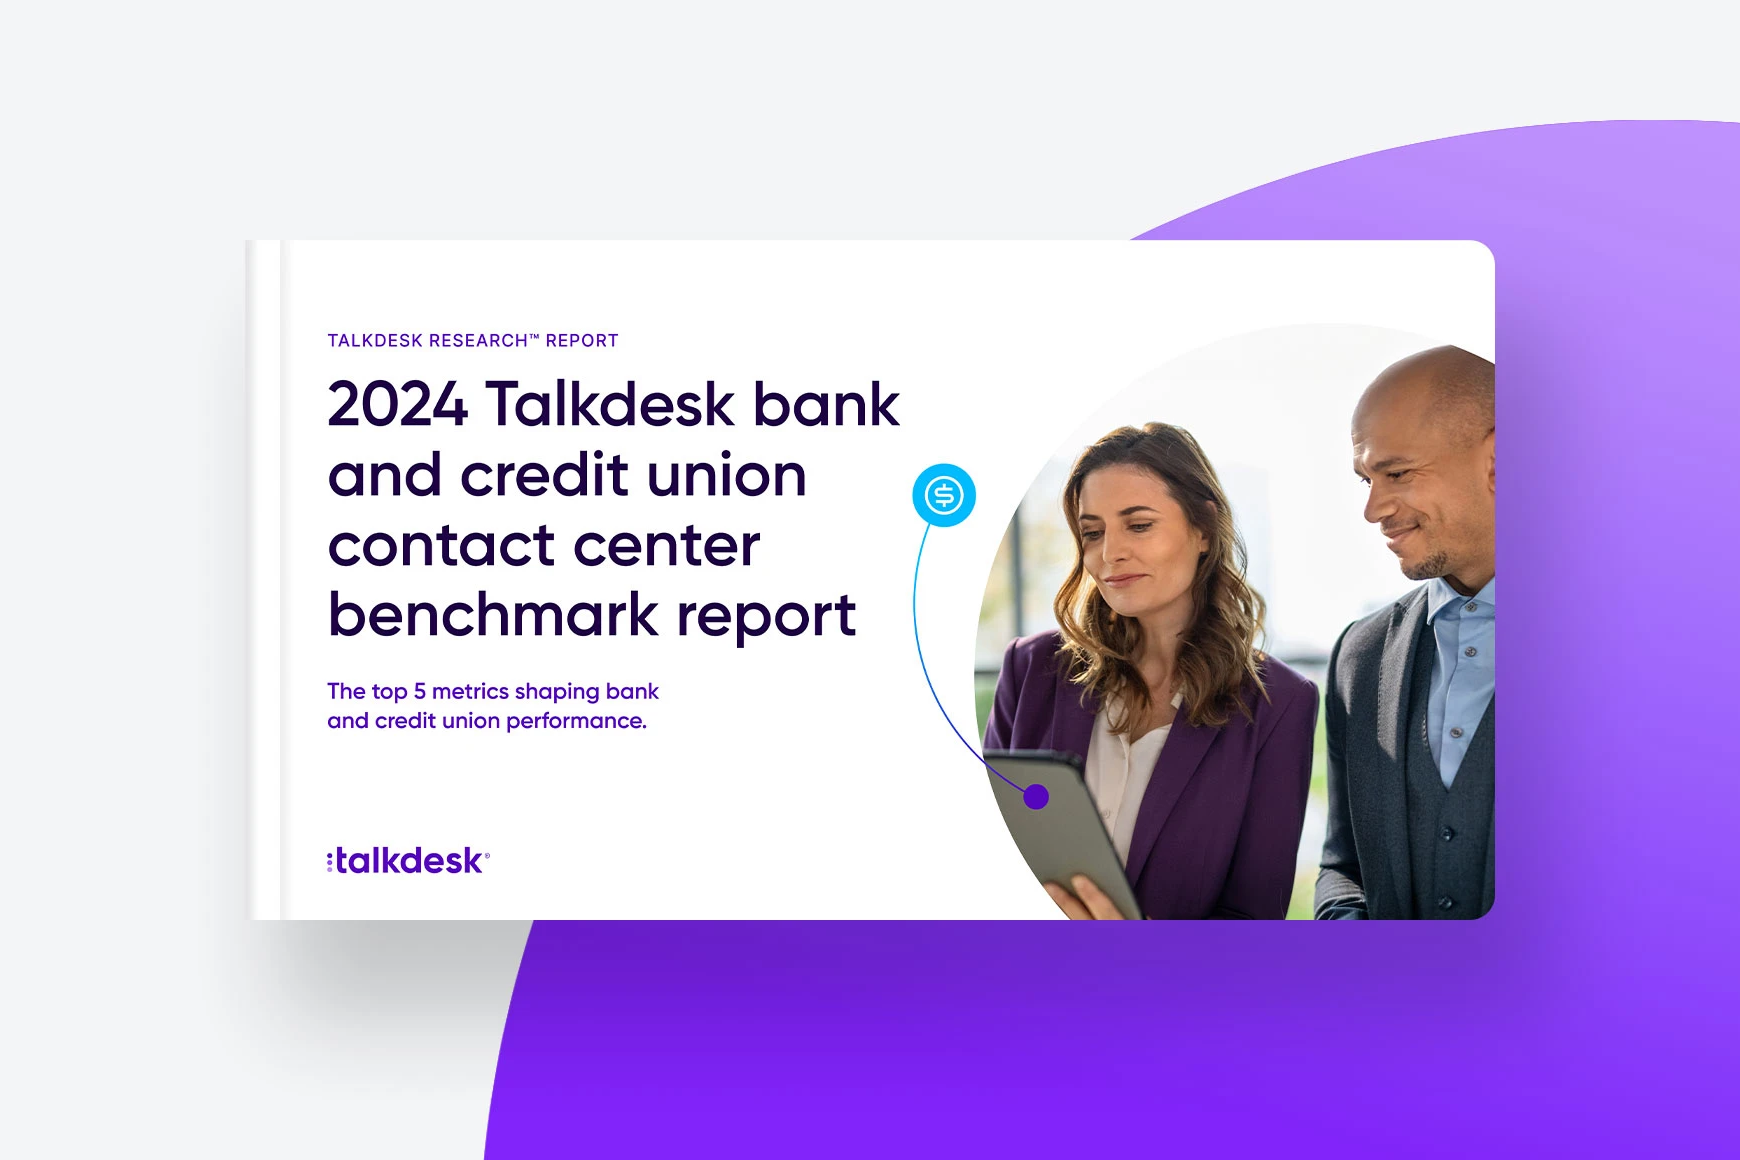 Report di Benchmark di Talkdesk per Contact Center di Banche e Istituti di Credito 2024